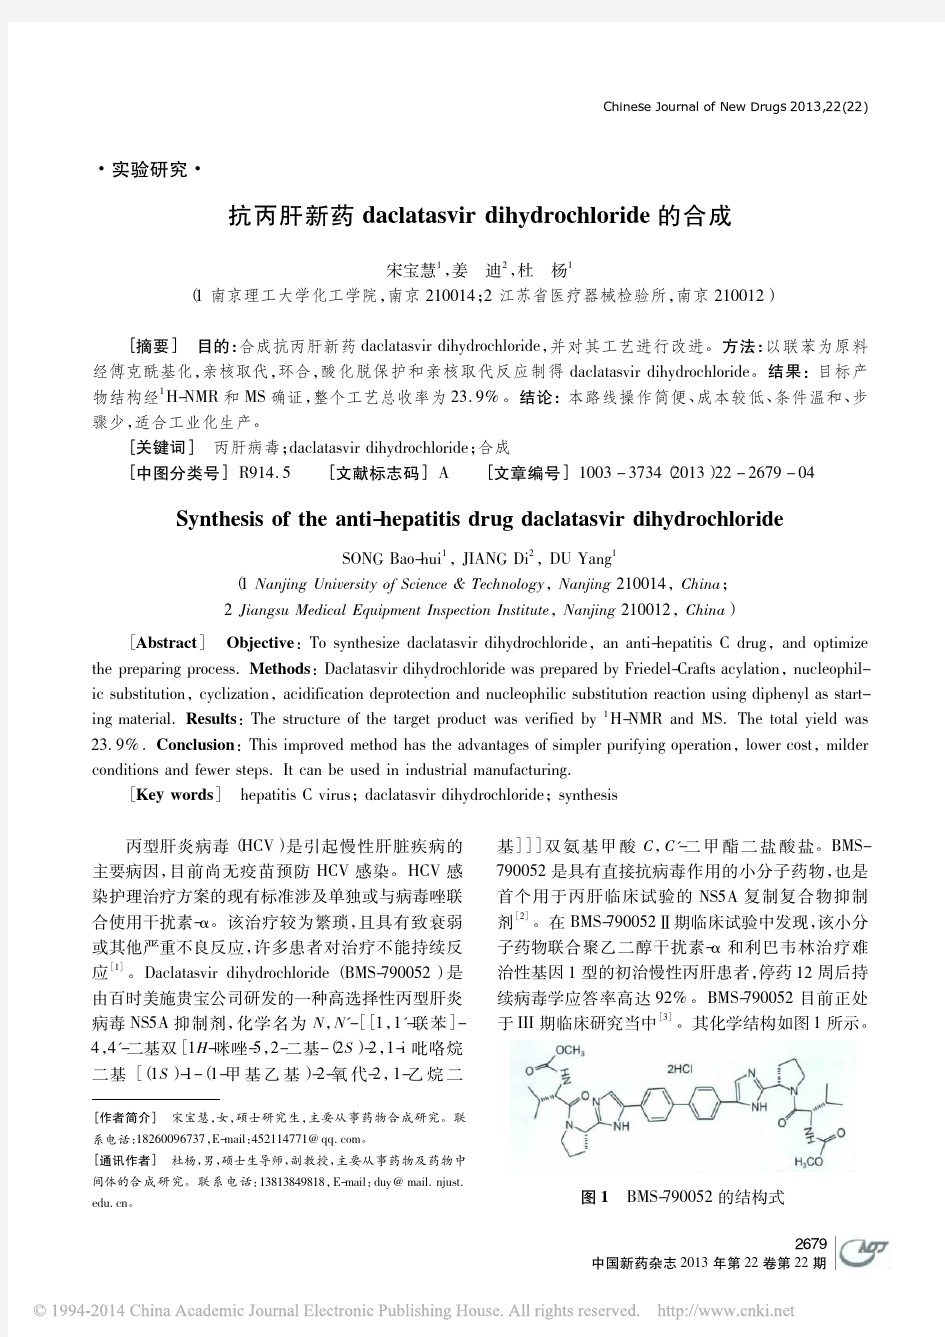 抗丙肝新药daclatasvir dihydrochloride的合成